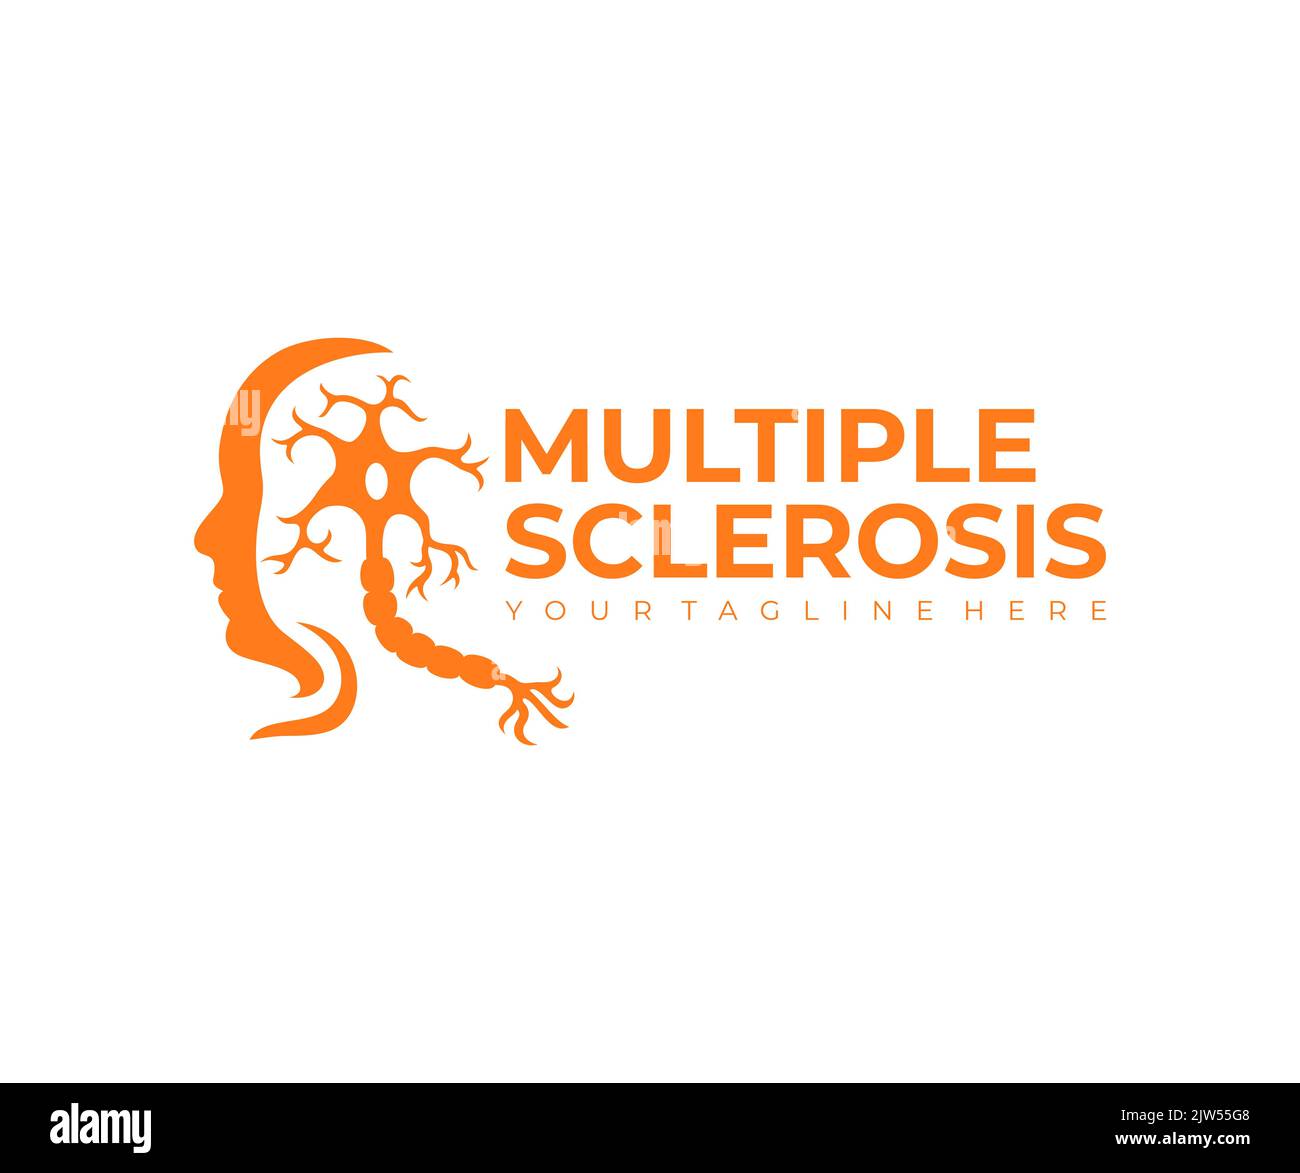 Multiple Sklerose, Autoimmunerkrankung und menschliches Gesicht, Logo-Design. Krankheit, Medizin, Neuron und die Nerven des Gehirns und Rückenmarks, Vektor Stock Vektor